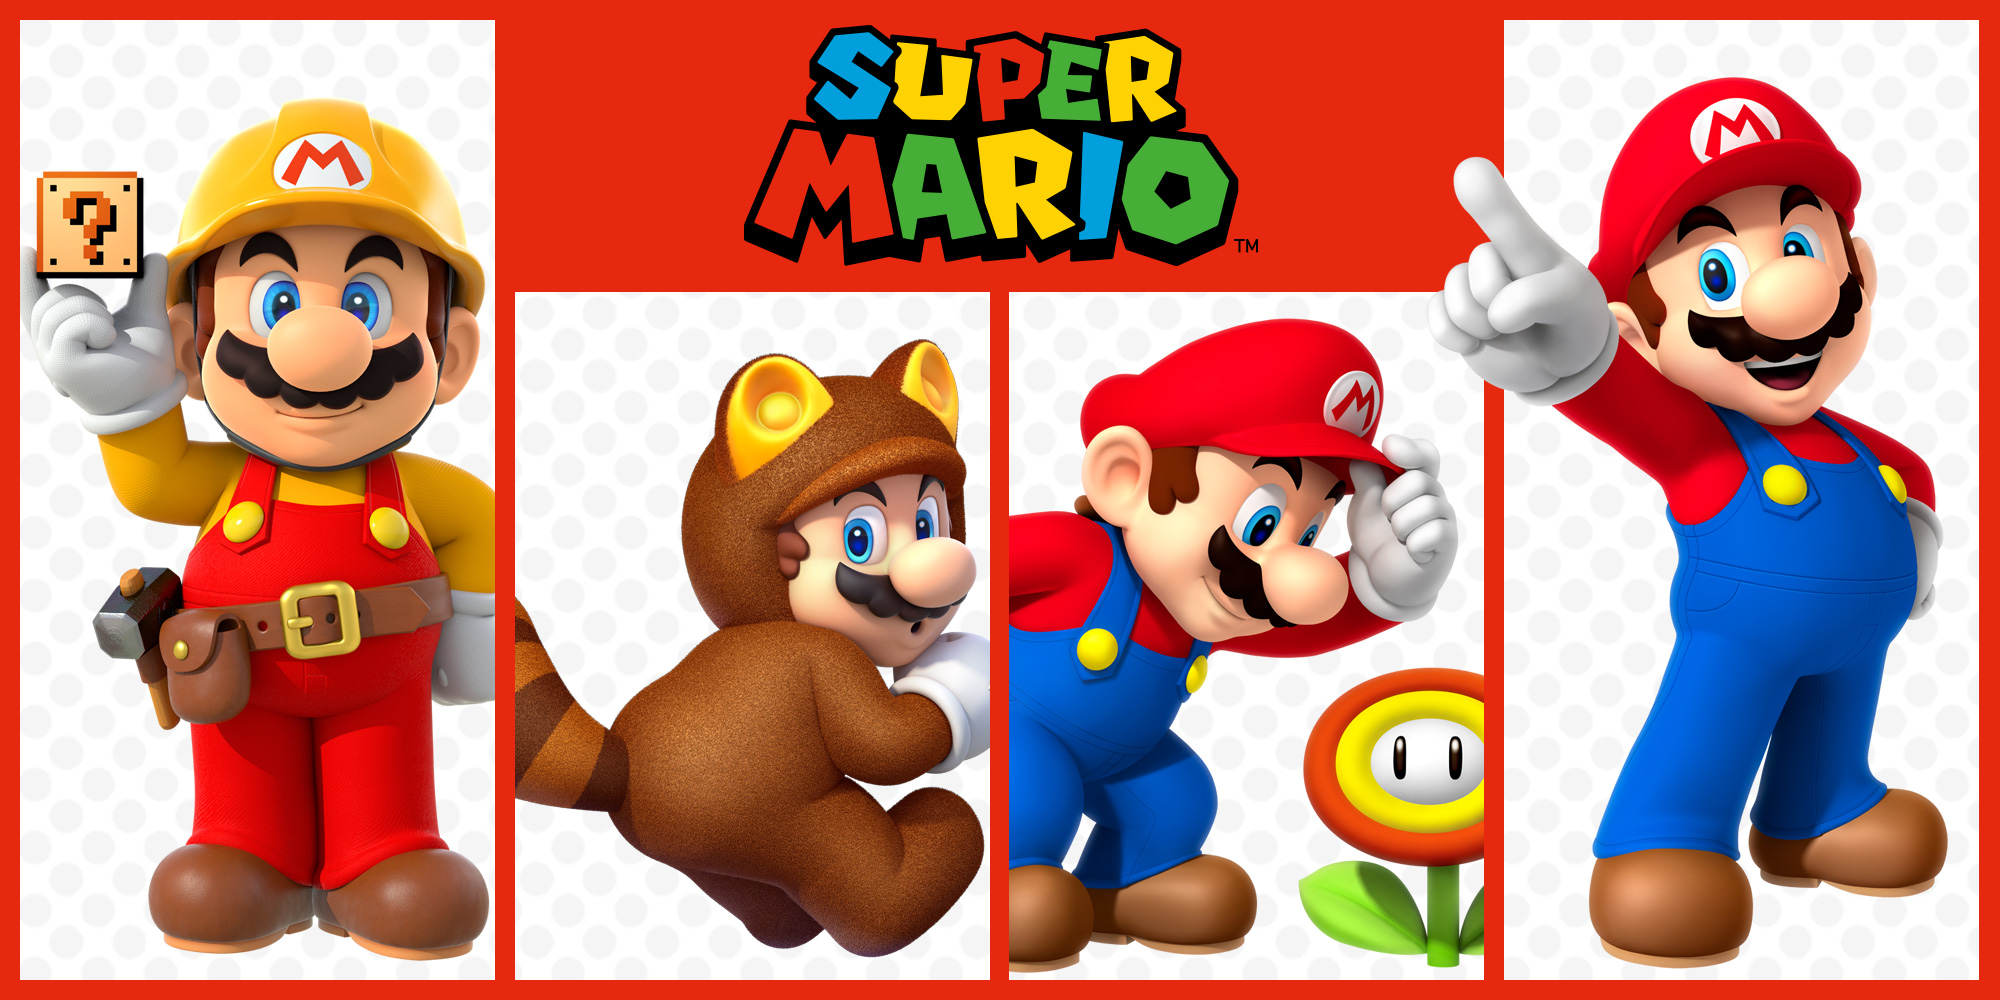 Descobre os títulos Super Mario que podes jogar nas consolas atuais Nintendo 3DS e Wii U!